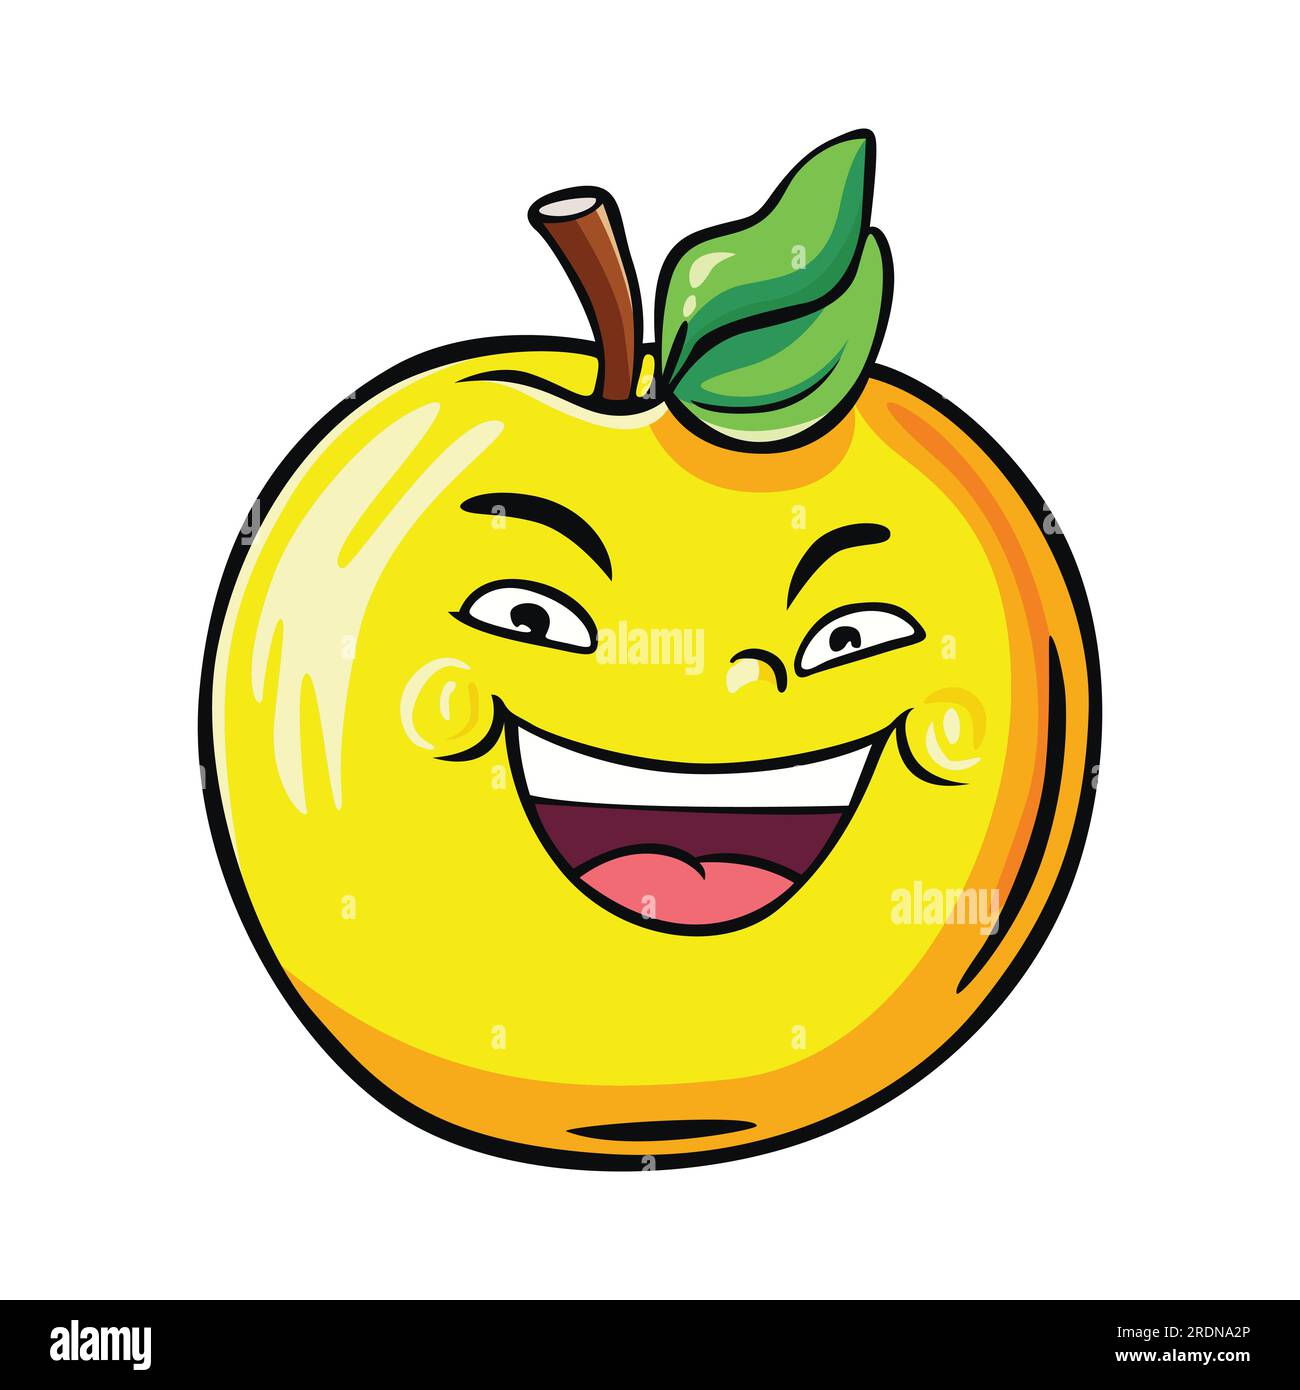 apple happy face emoticon